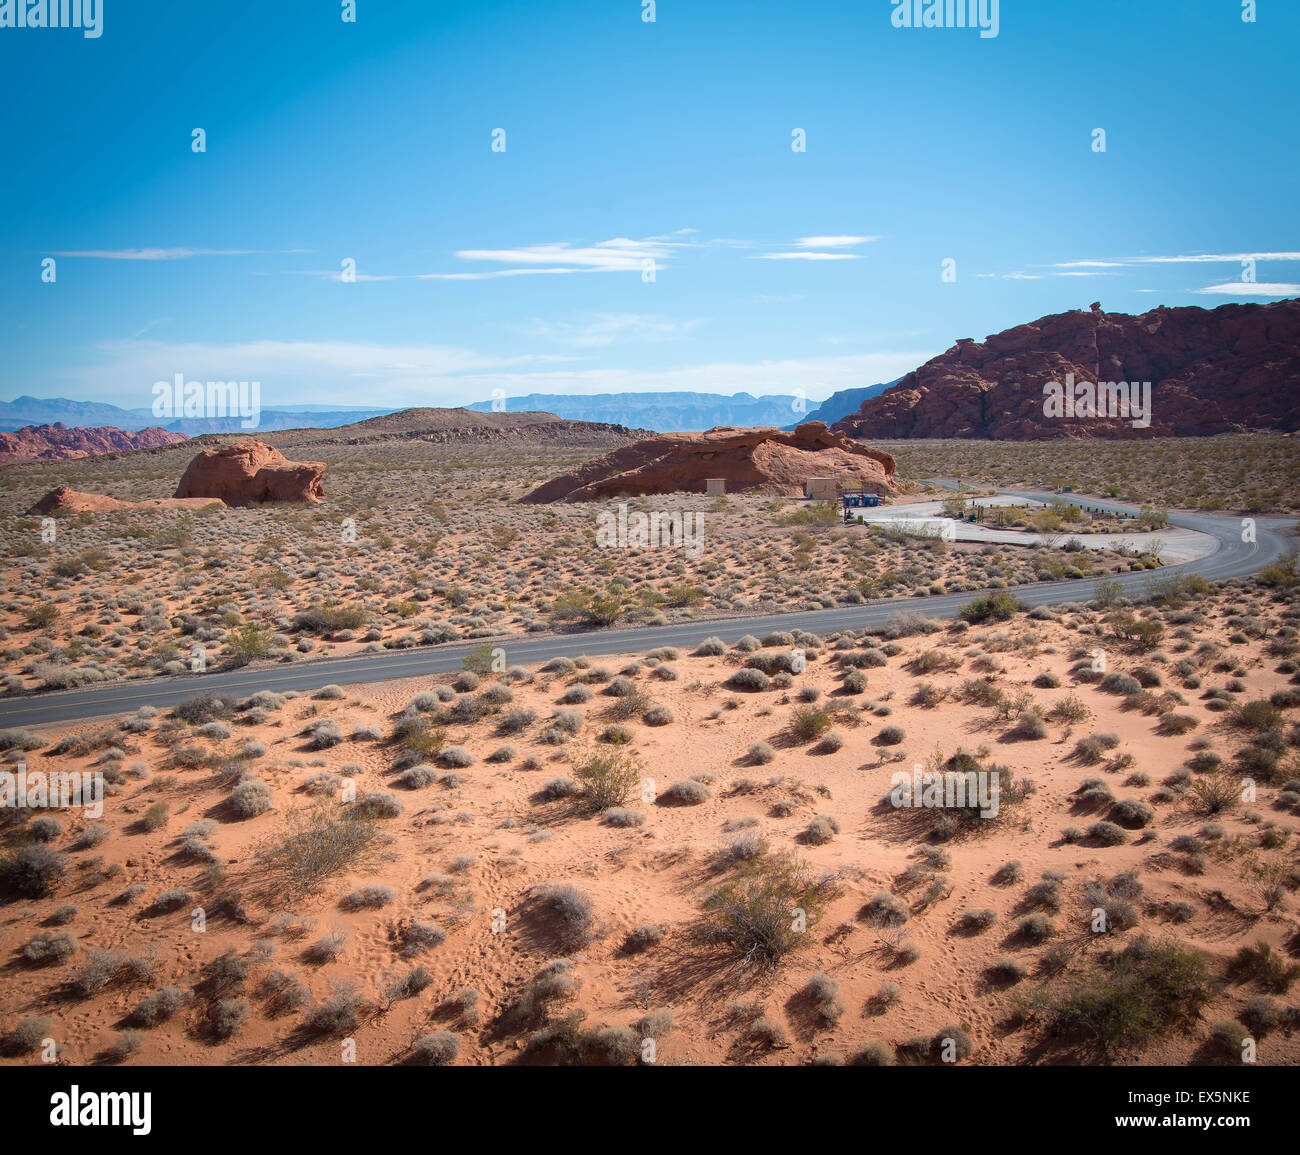 Deserto, la Valle del Fuoco stato parco vicino a Las Vegas, Nevada Foto Stock